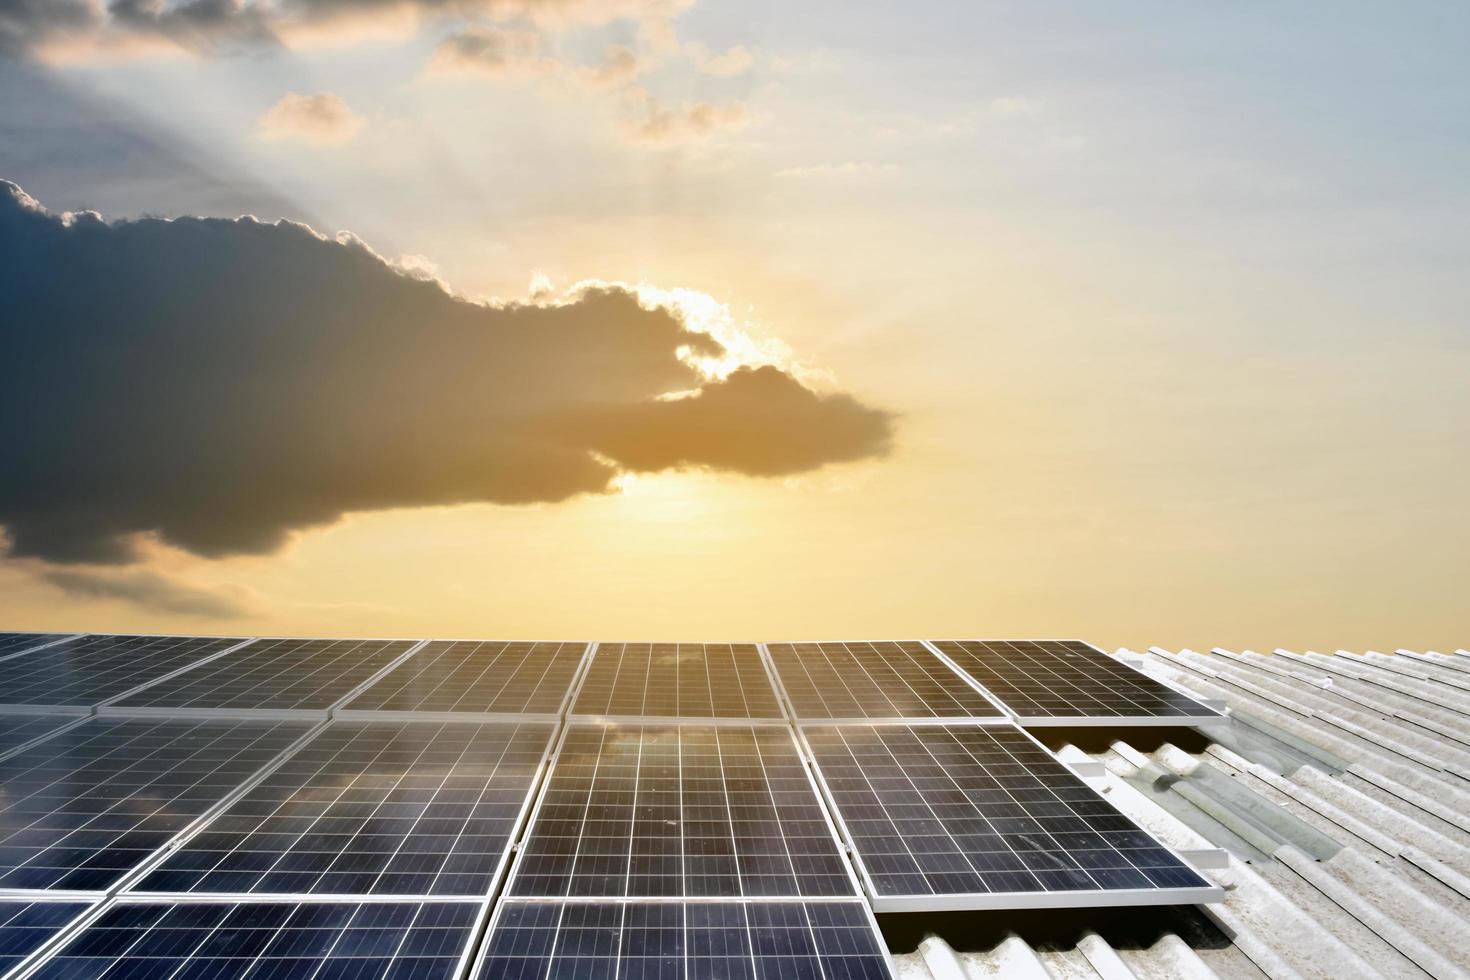 panel fotovoltaico, nueva tecnología para almacenar y utilizar la energía de la naturaleza con la vida humana, concepto de energía sostenible. foto